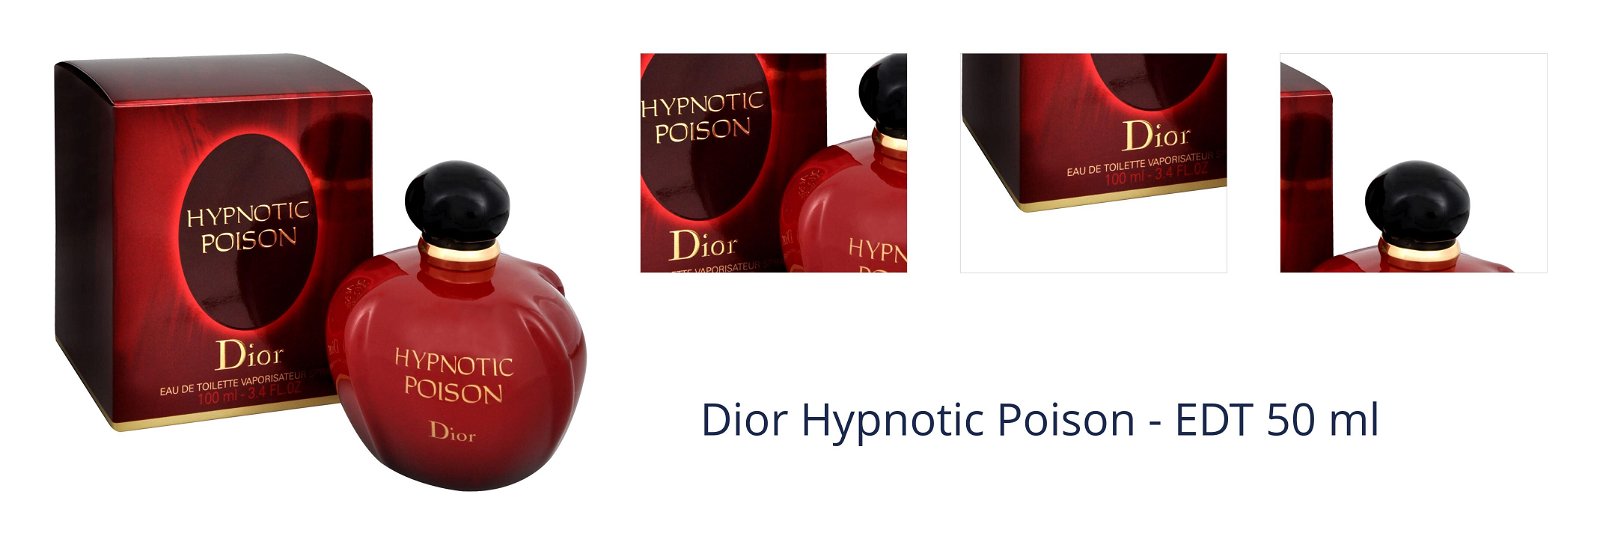 Dior Hypnotic Poison - EDT 50 ml 1